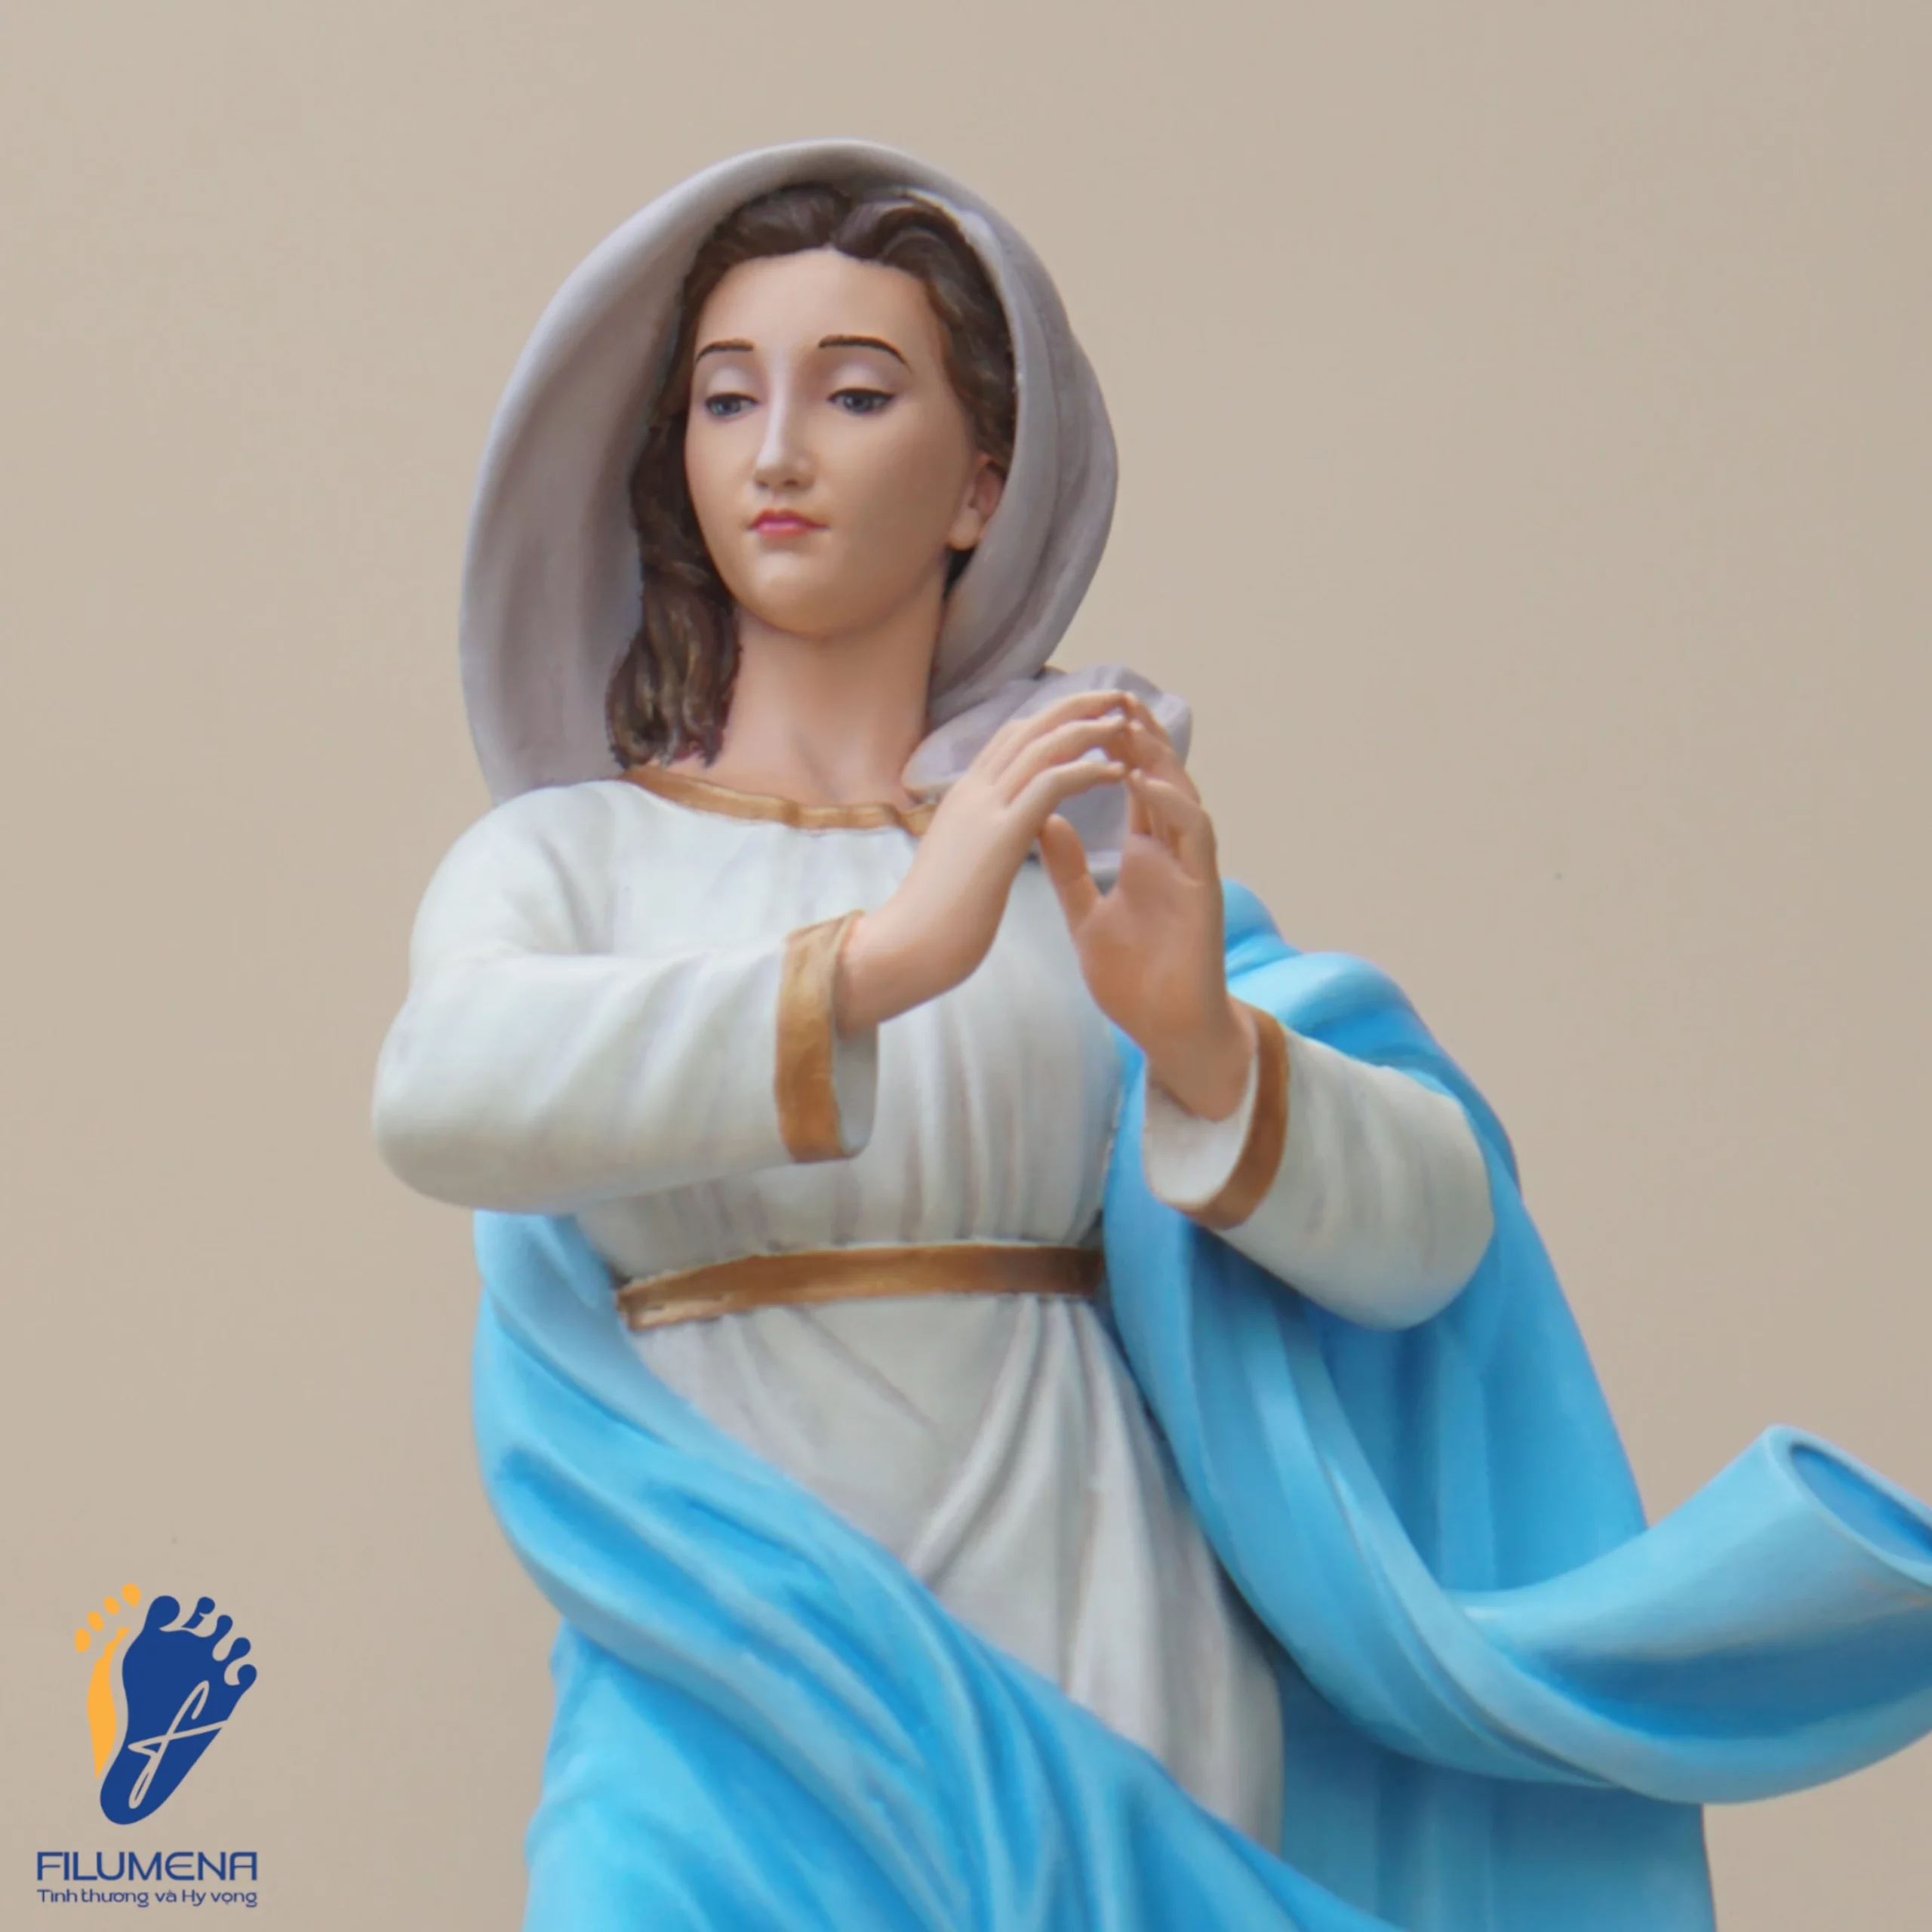 Tượng Đức Mẹ Vô Nhiễm Nguyên Tội, áo Mẹ màu xanh da trời, chụp từ góc phải, cận cảnh (sáng tác bởi Filumena)